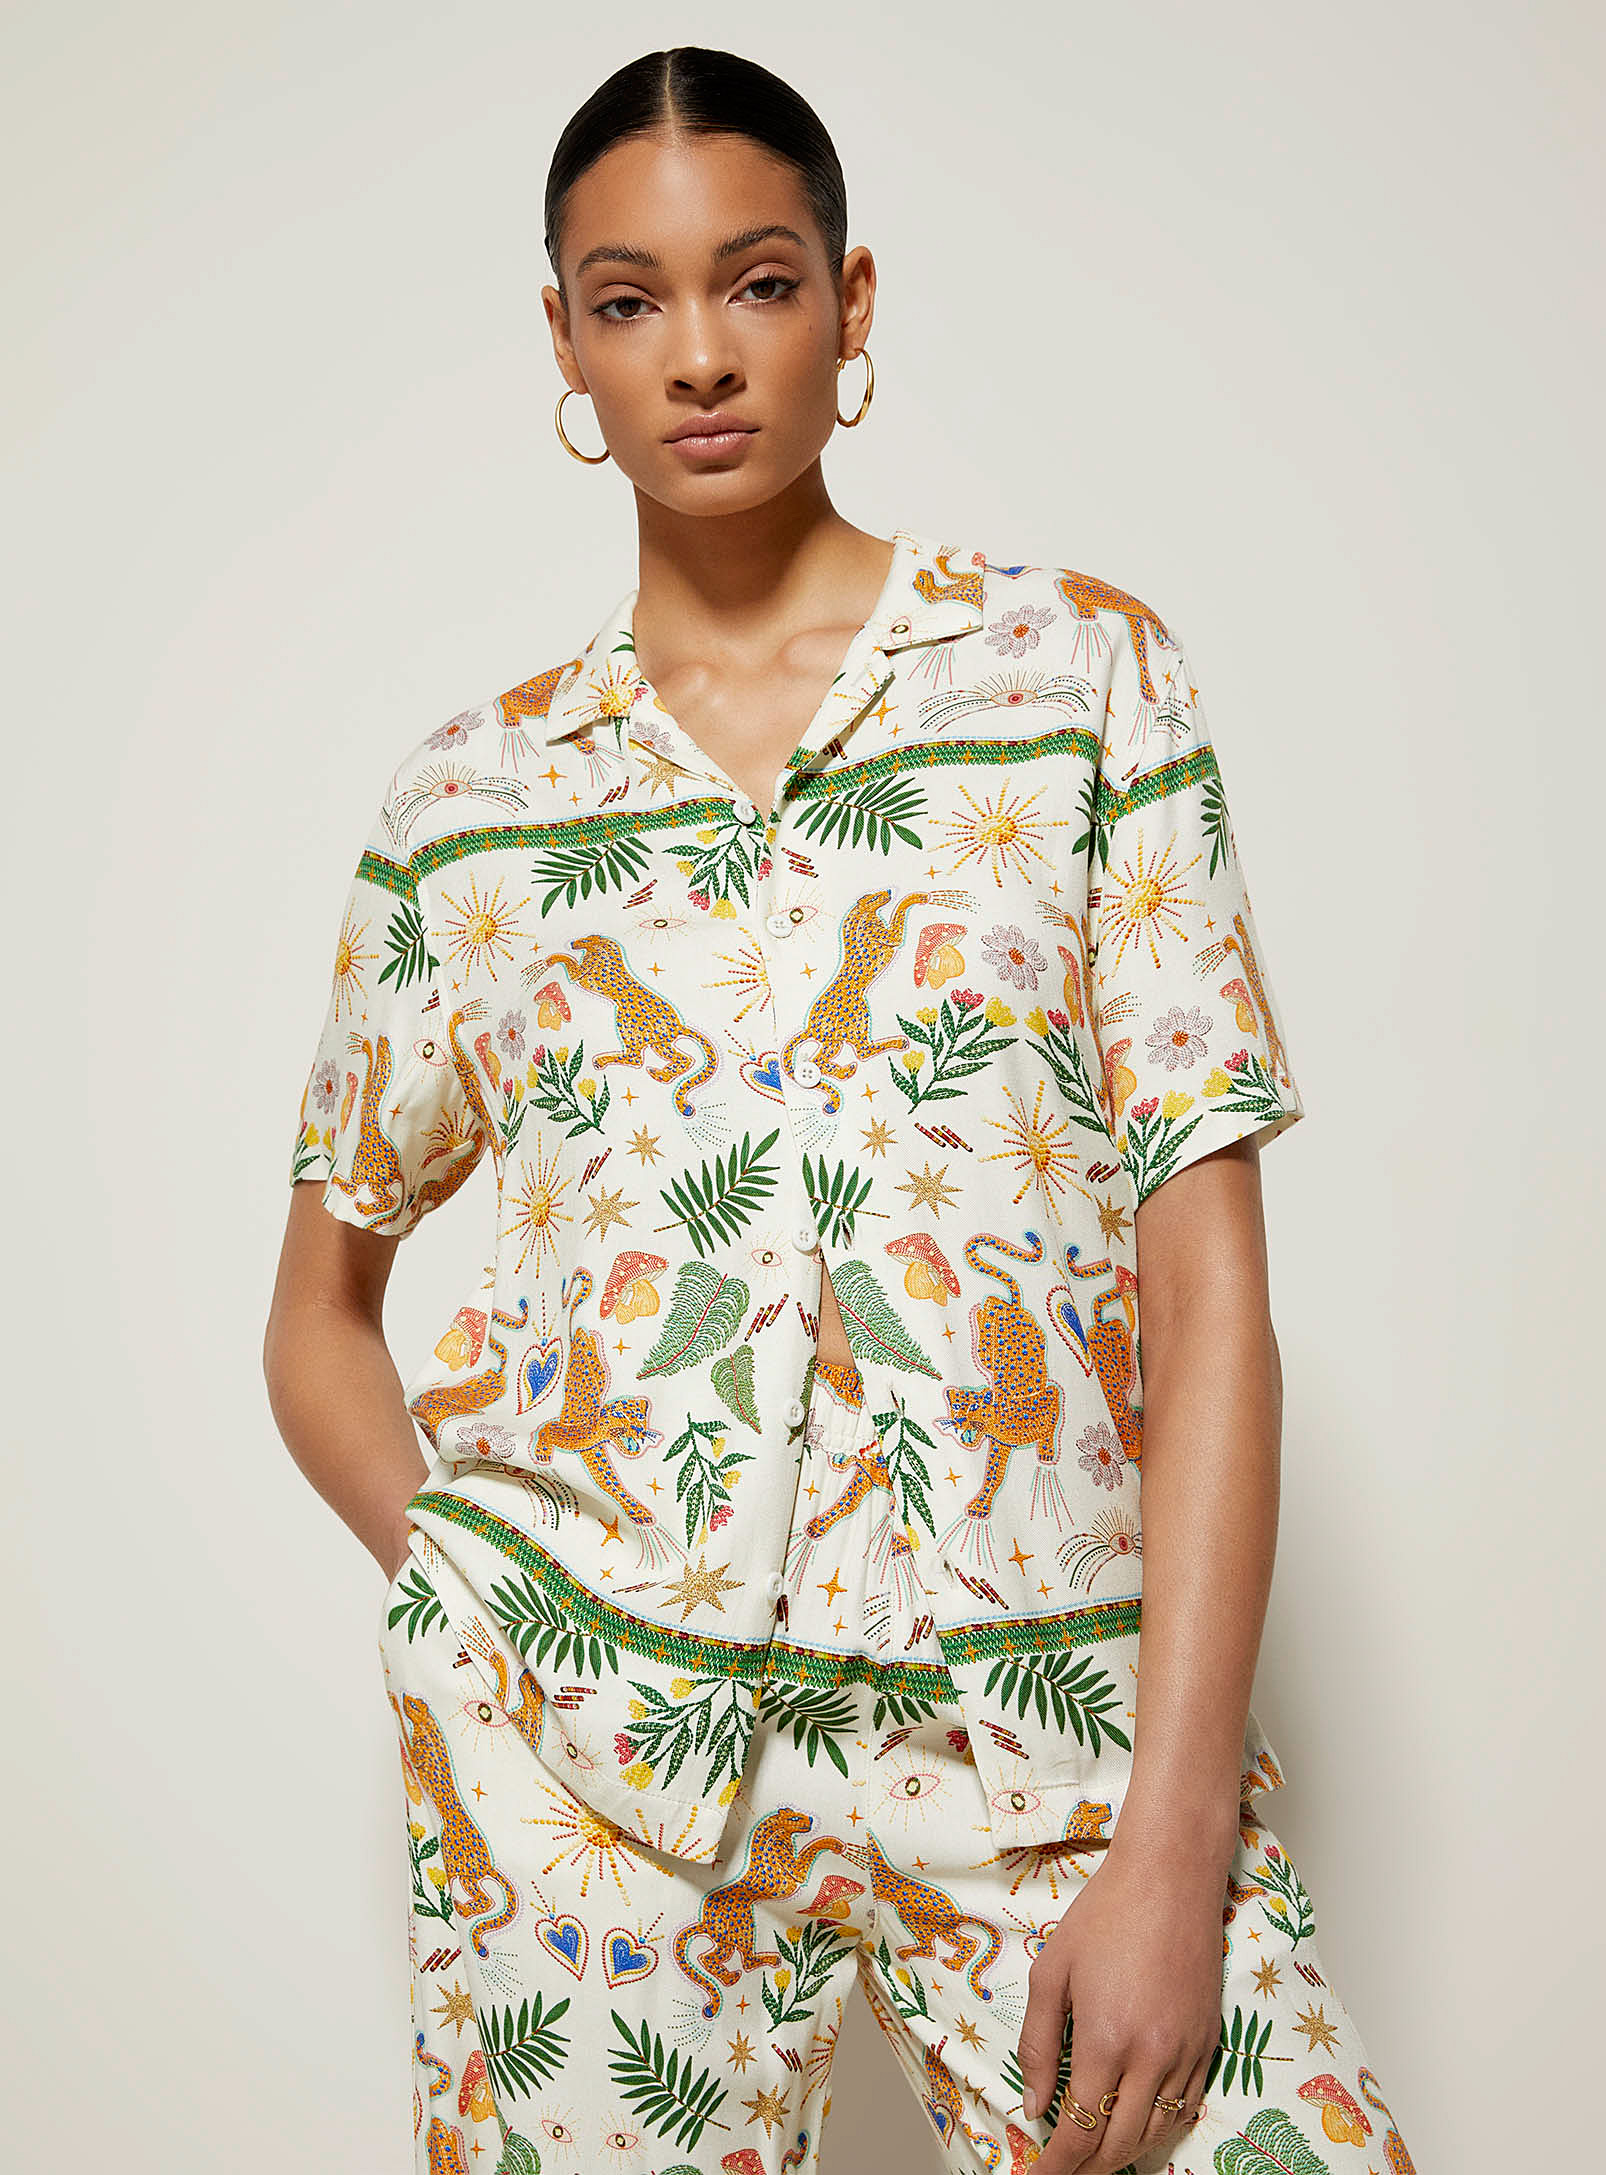 Kuwalla Exotic Patterns Flowy Shirt In Patterned Ecru